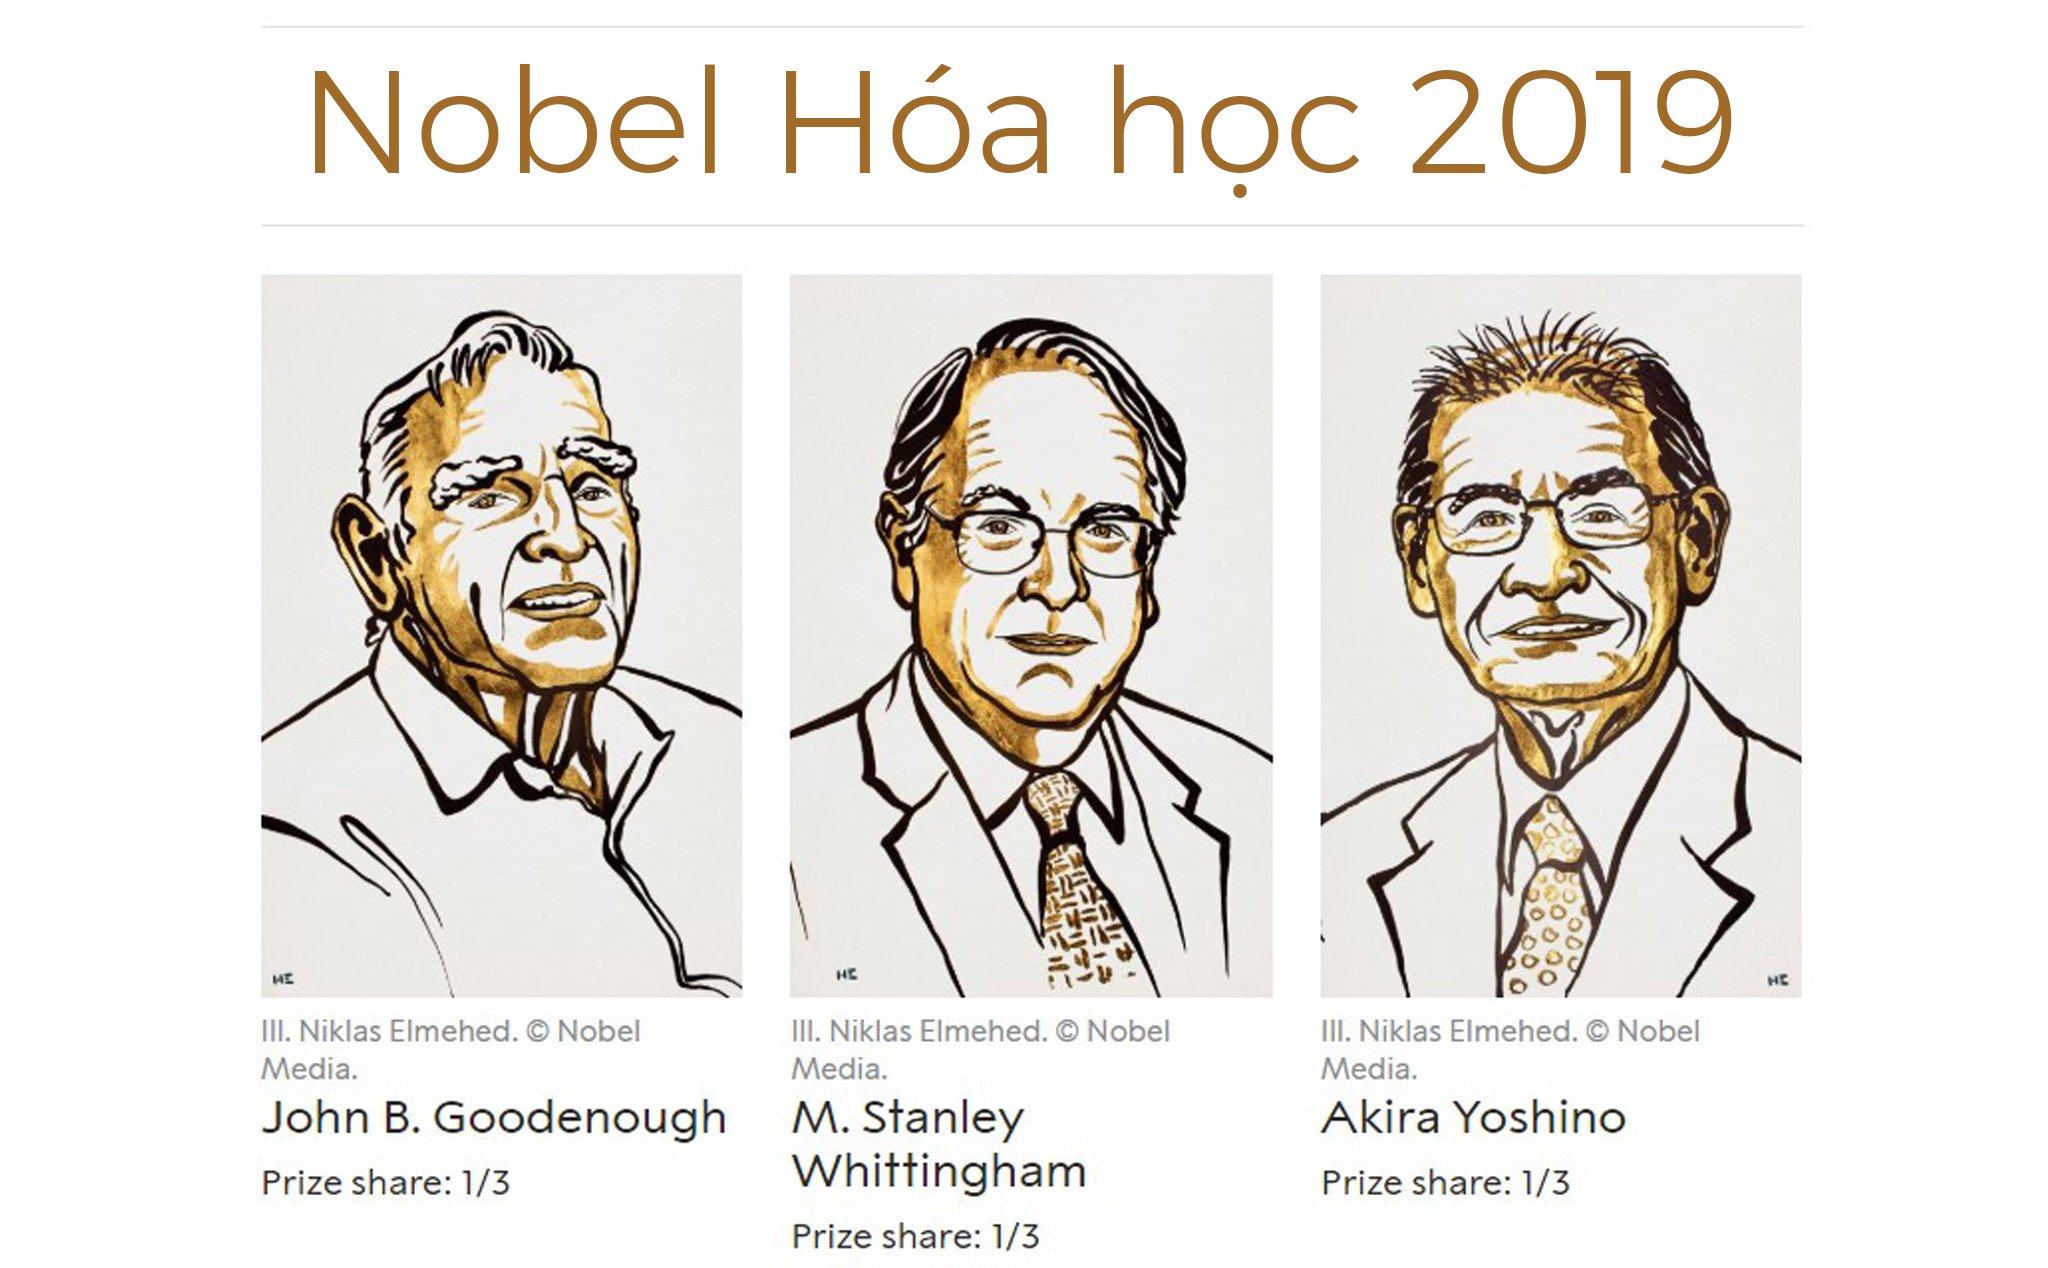 Nobel Hóa học 2019: Vinh danh 3 nhà khoa học phát triển pin lithium-ion